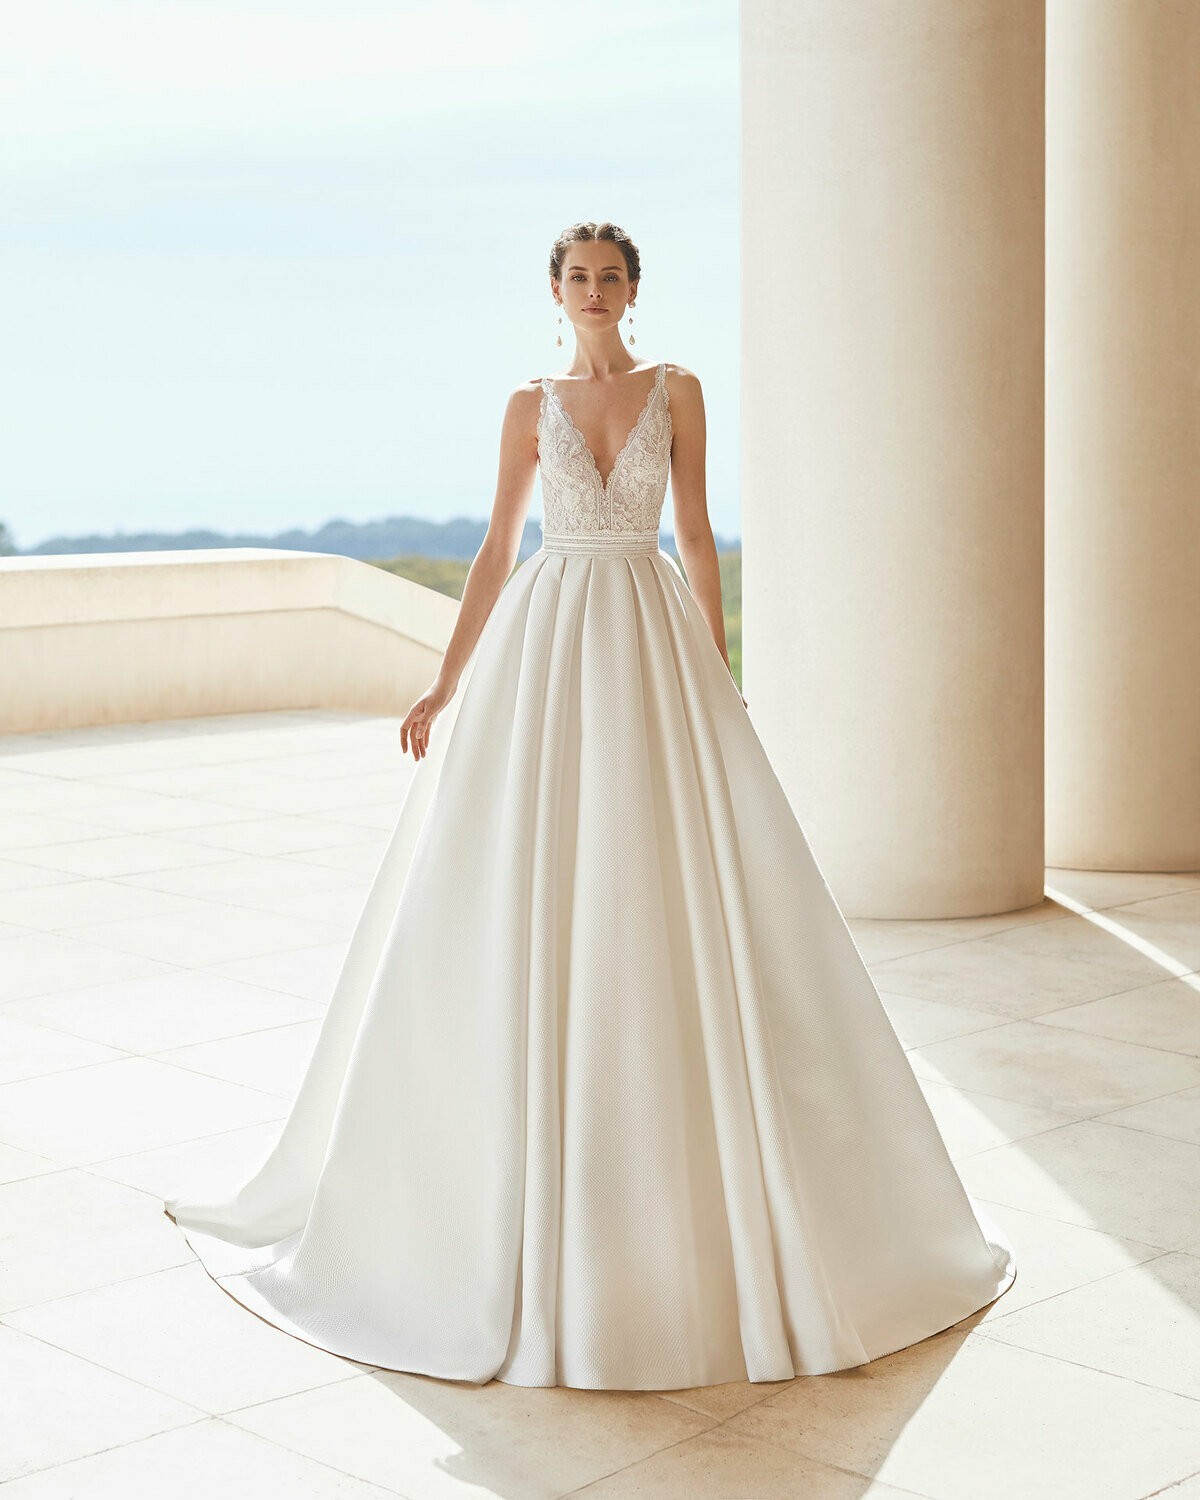 SABINA - abito da sposa collezione 2020 - Rosa Clarà Couture